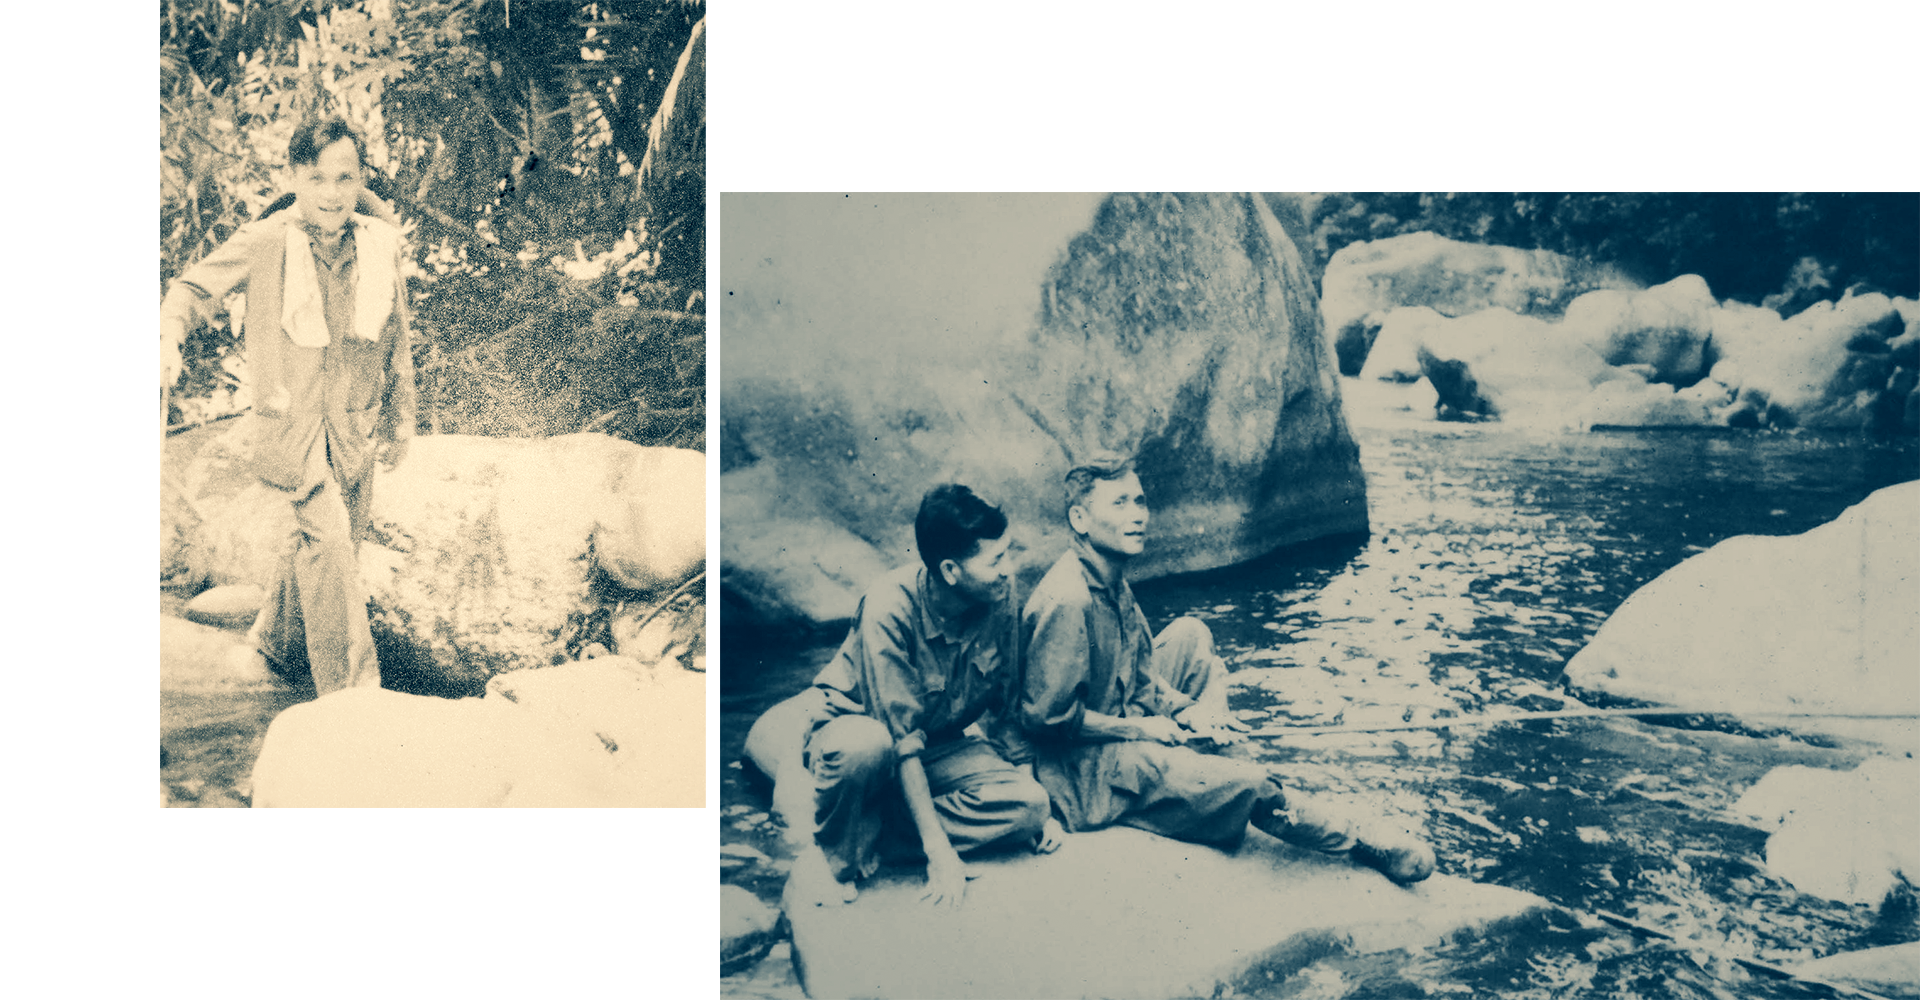 Đồng chí Chu Huy Mân giữa núi rừng Khu V trong những năm chống Mỹ (ảnh trái); Phút thảnh thơi hiếm hoi ở chiến trường của Tư lệnh Khu V Chu Huy Mân.